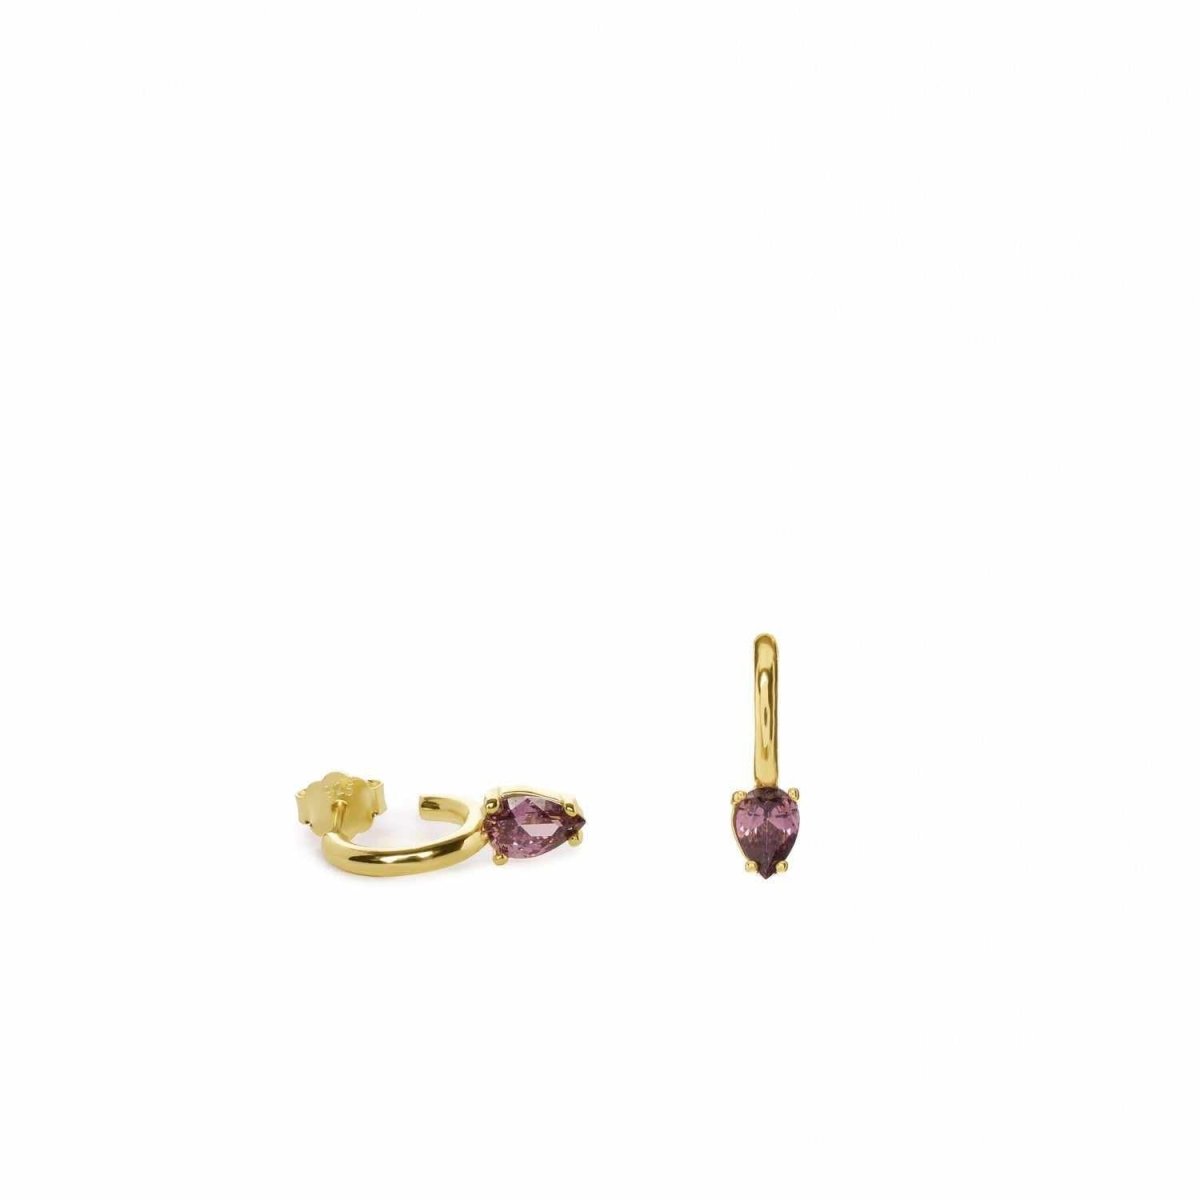 Pendiente · Pendientes aros pequeños bañados en oro diseño cuarzo adamantino perilla rojiza